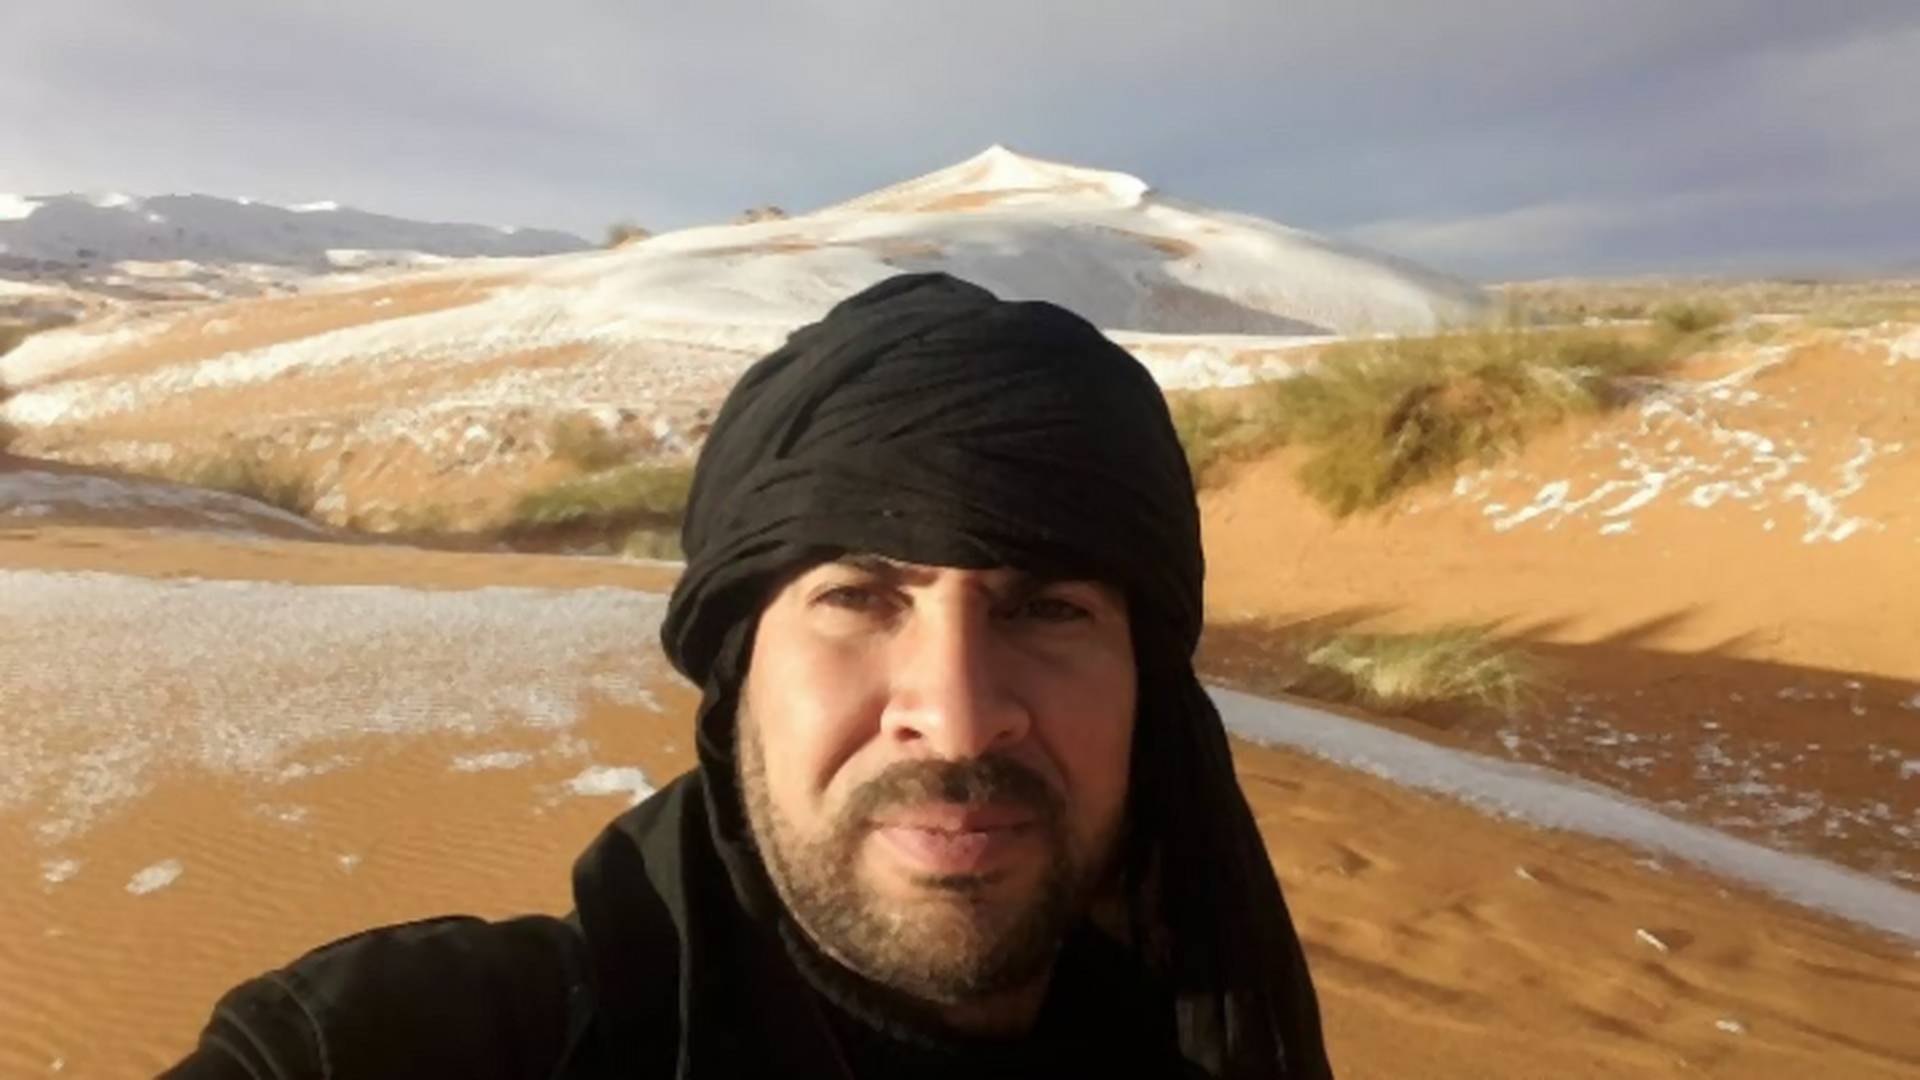 Lik koji je napravio najjače fotke snega u Sahari